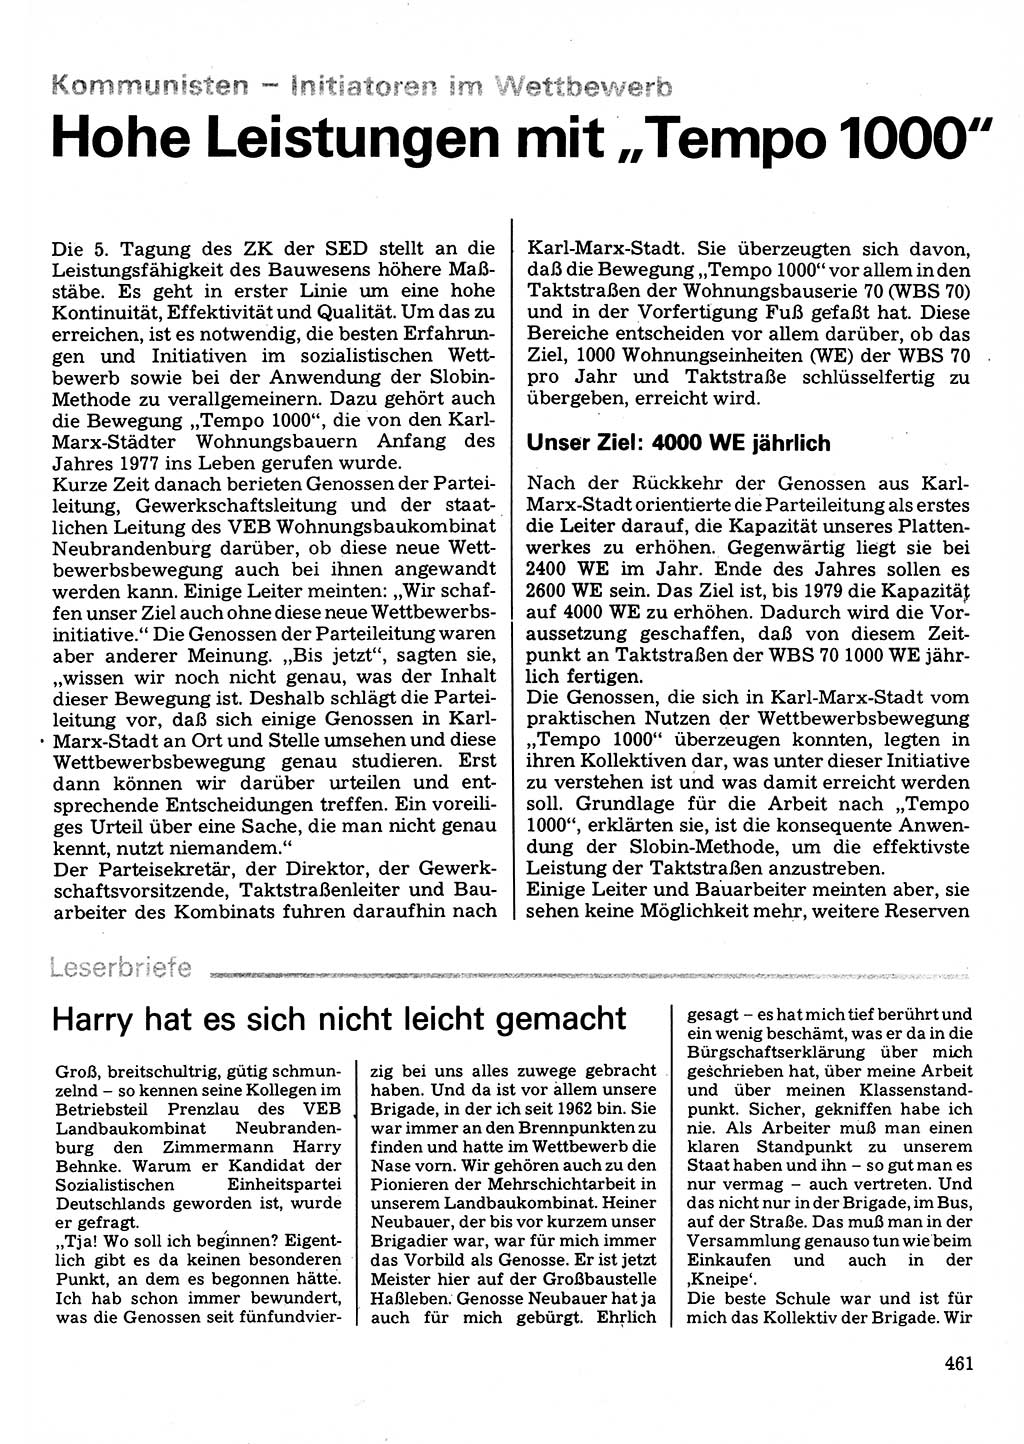 Neuer Weg (NW), Organ des Zentralkomitees (ZK) der SED (Sozialistische Einheitspartei Deutschlands) für Fragen des Parteilebens, 32. Jahrgang [Deutsche Demokratische Republik (DDR)] 1977, Seite 461 (NW ZK SED DDR 1977, S. 461)